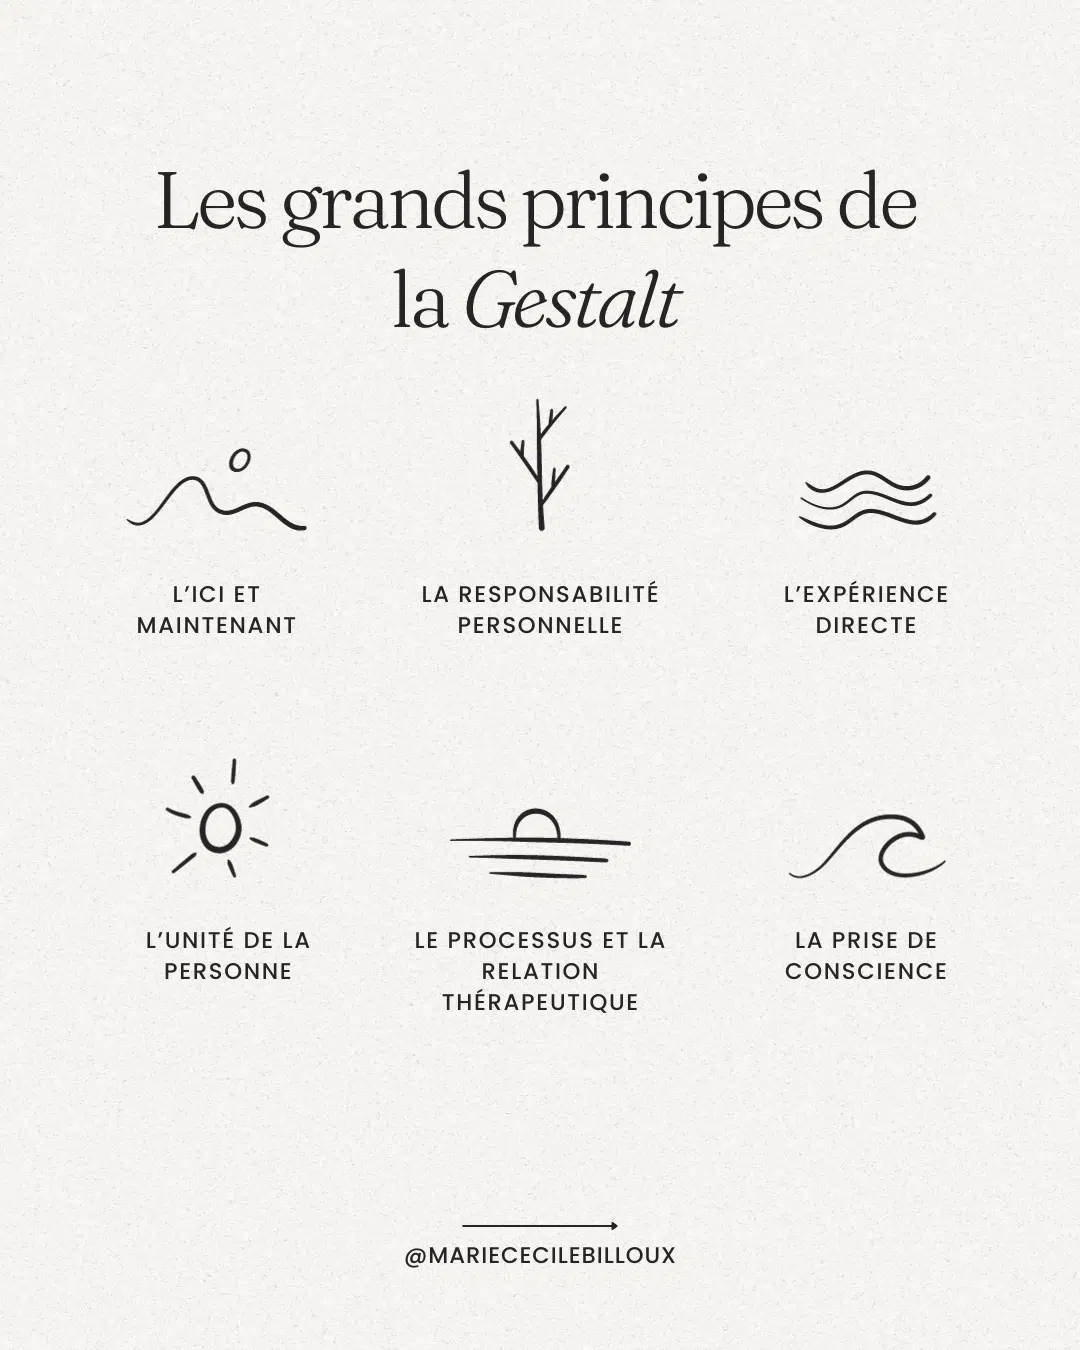 Les grands principes de la Gestalt thérapie - définition - Marie-Cécile Billoux